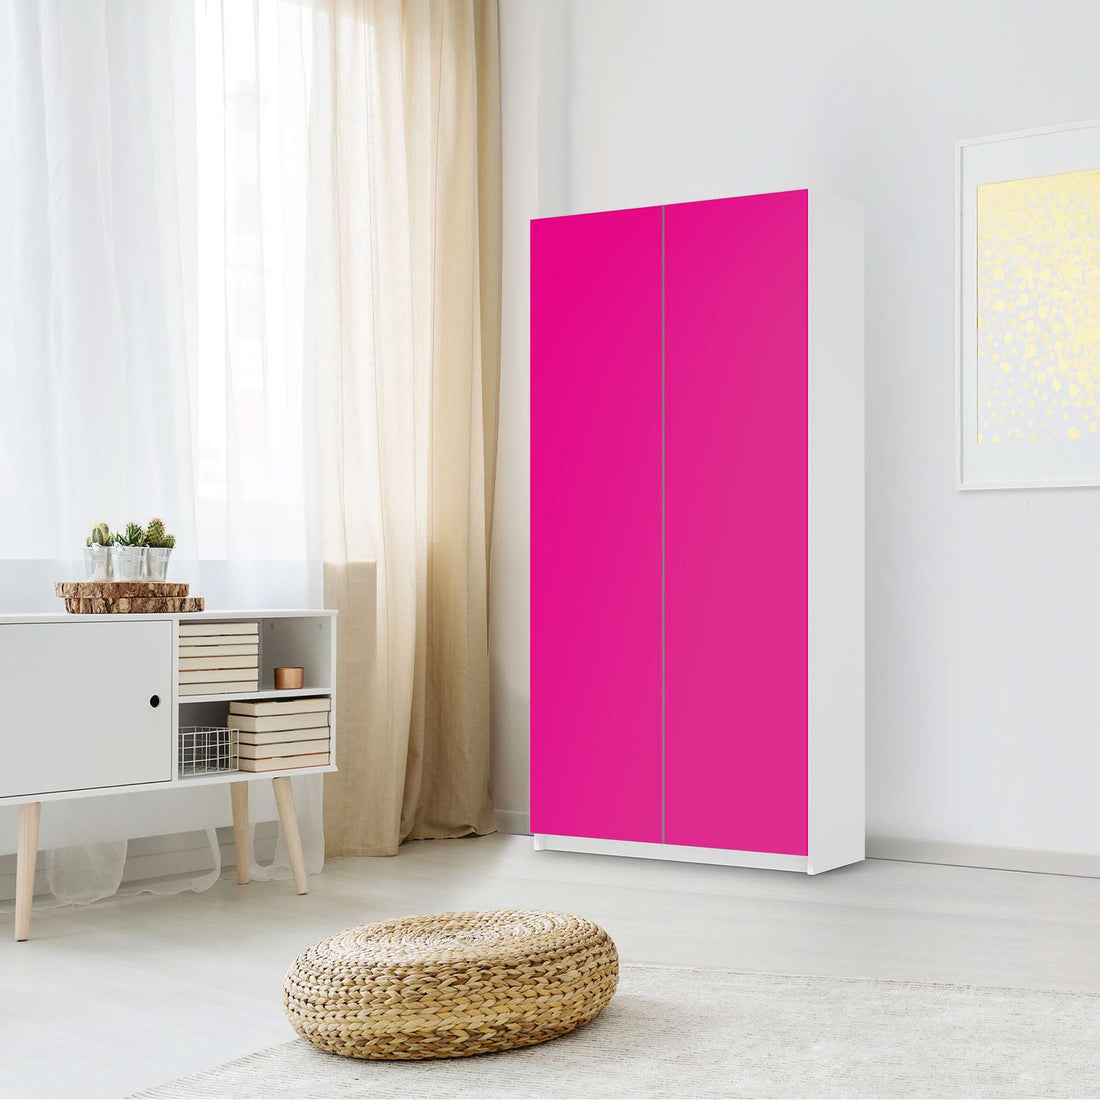 Klebefolie für Möbel Pink Dark - IKEA Pax Schrank 201 cm Höhe - 2 Türen - Schlafzimmer